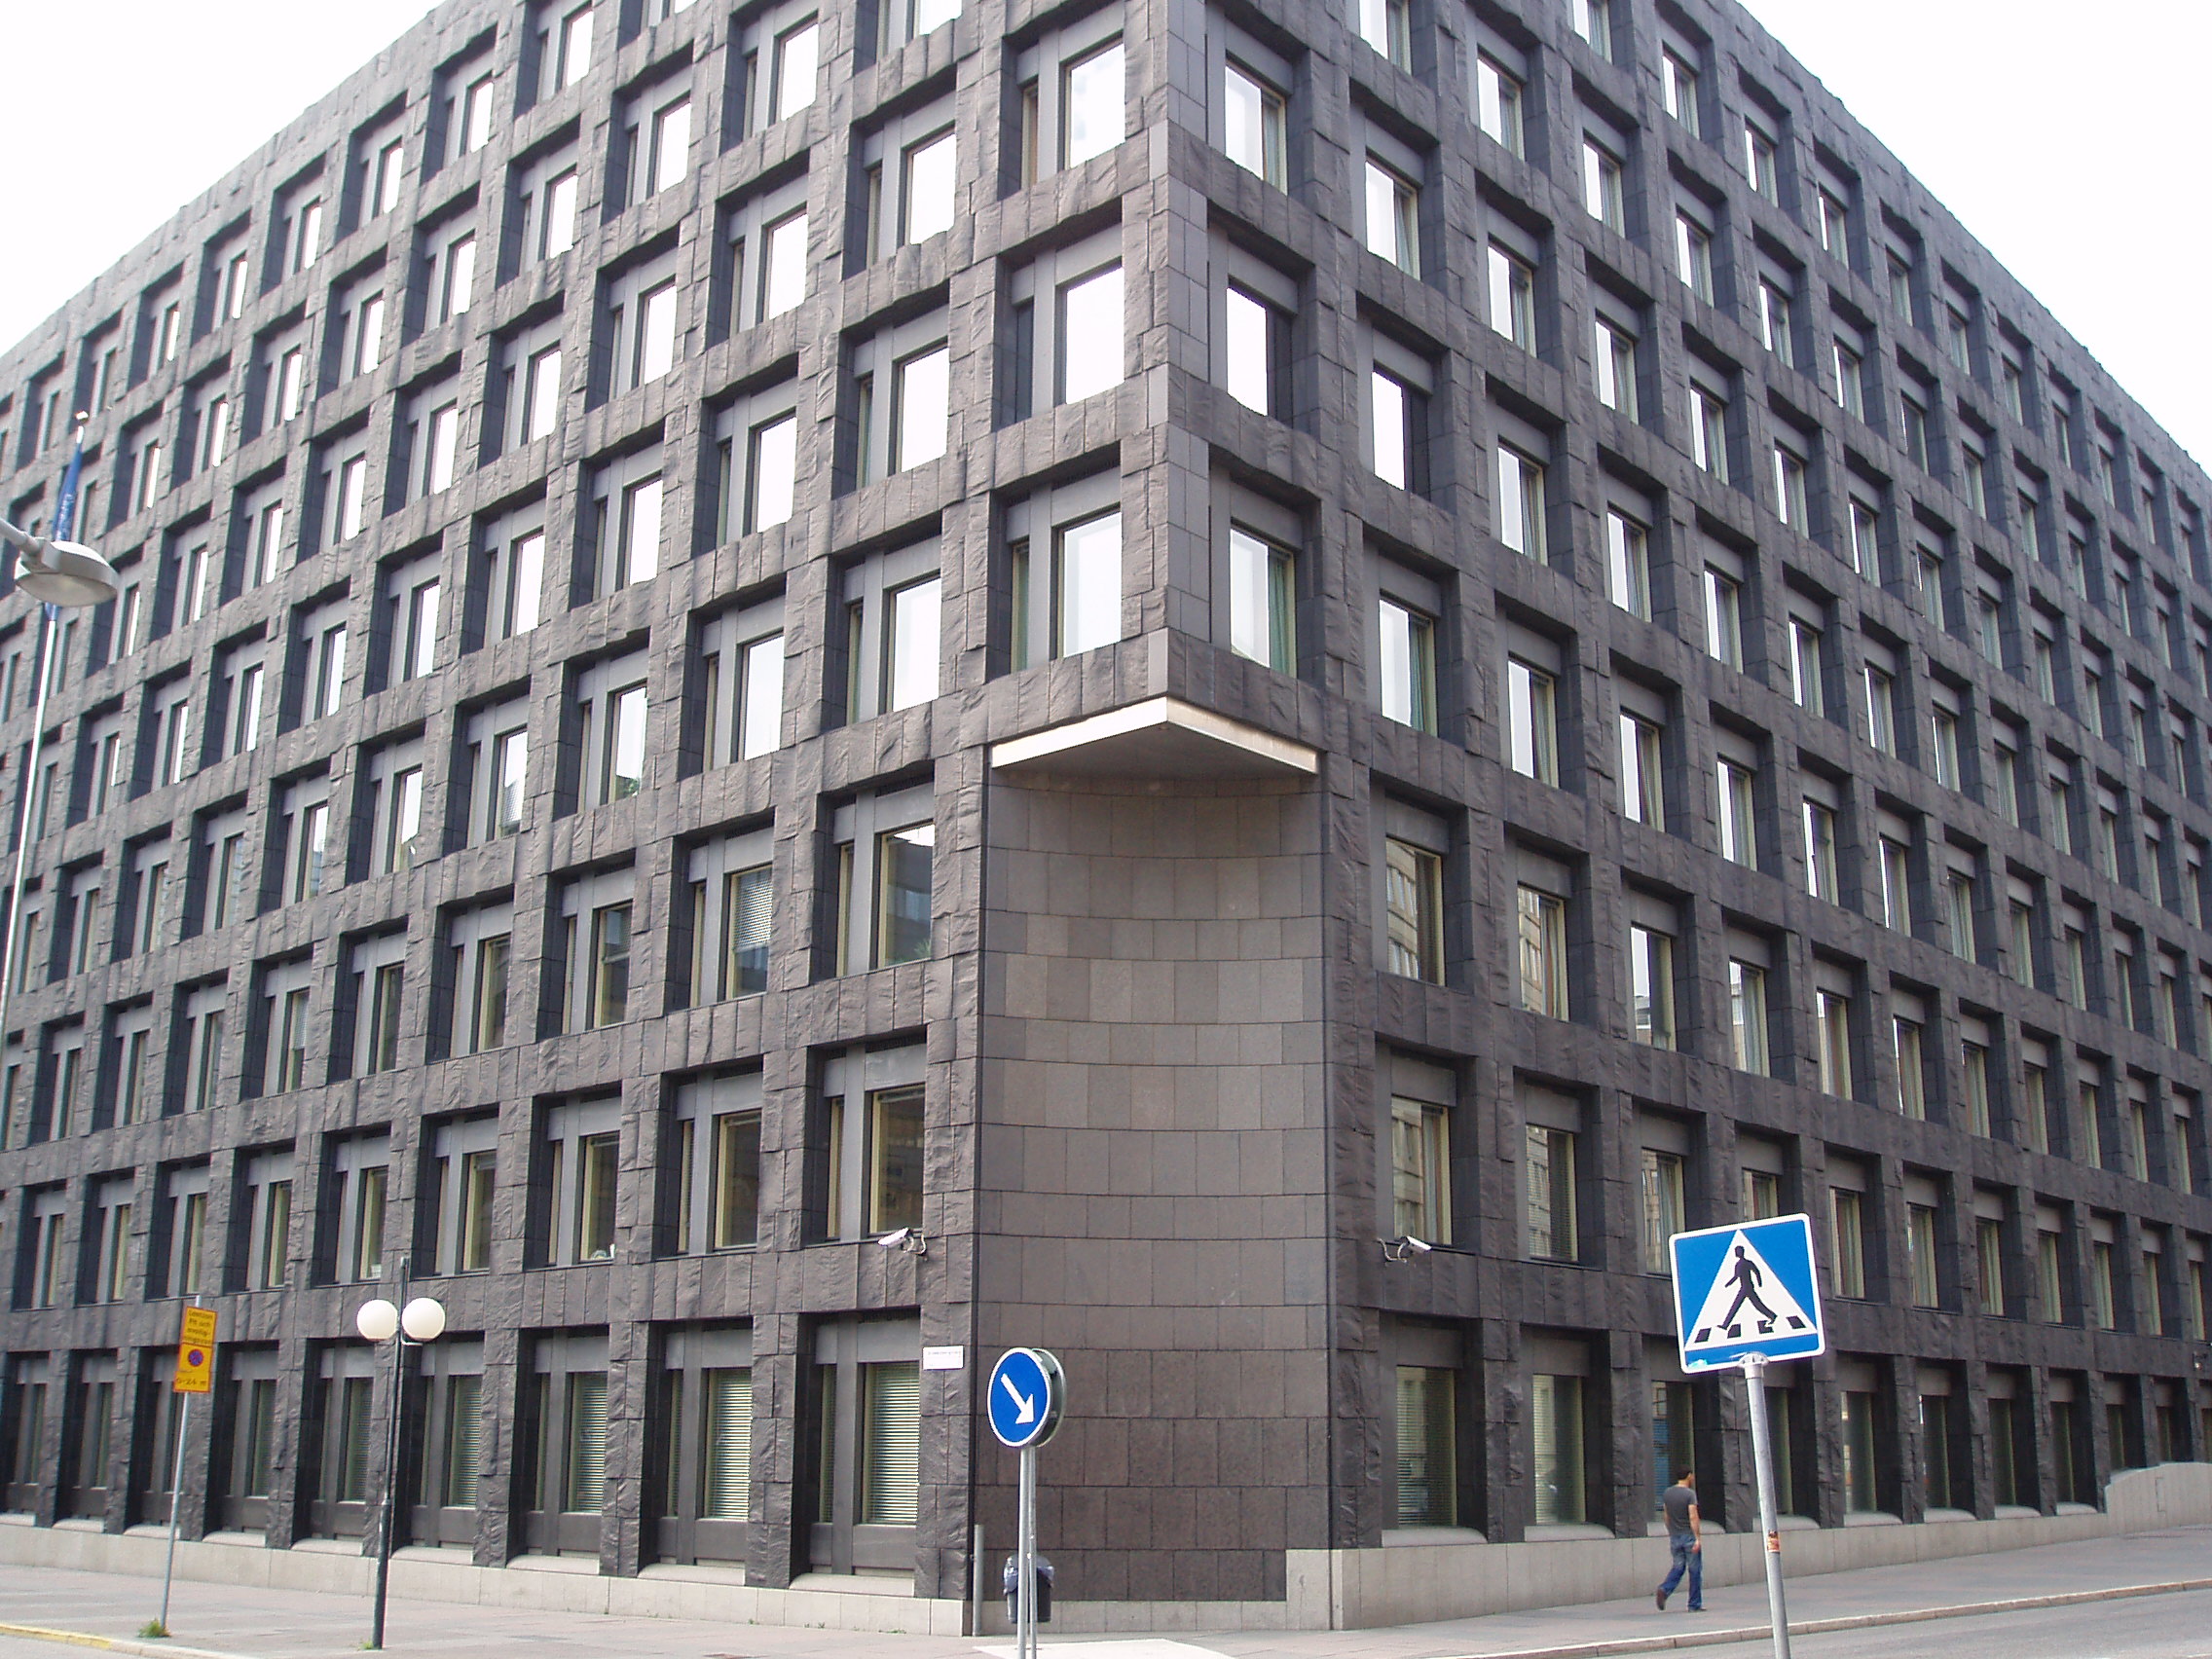 Riksbankshuset, the main building of Sveriges Riksbank, located at Brunkebergstorg in Stockholm